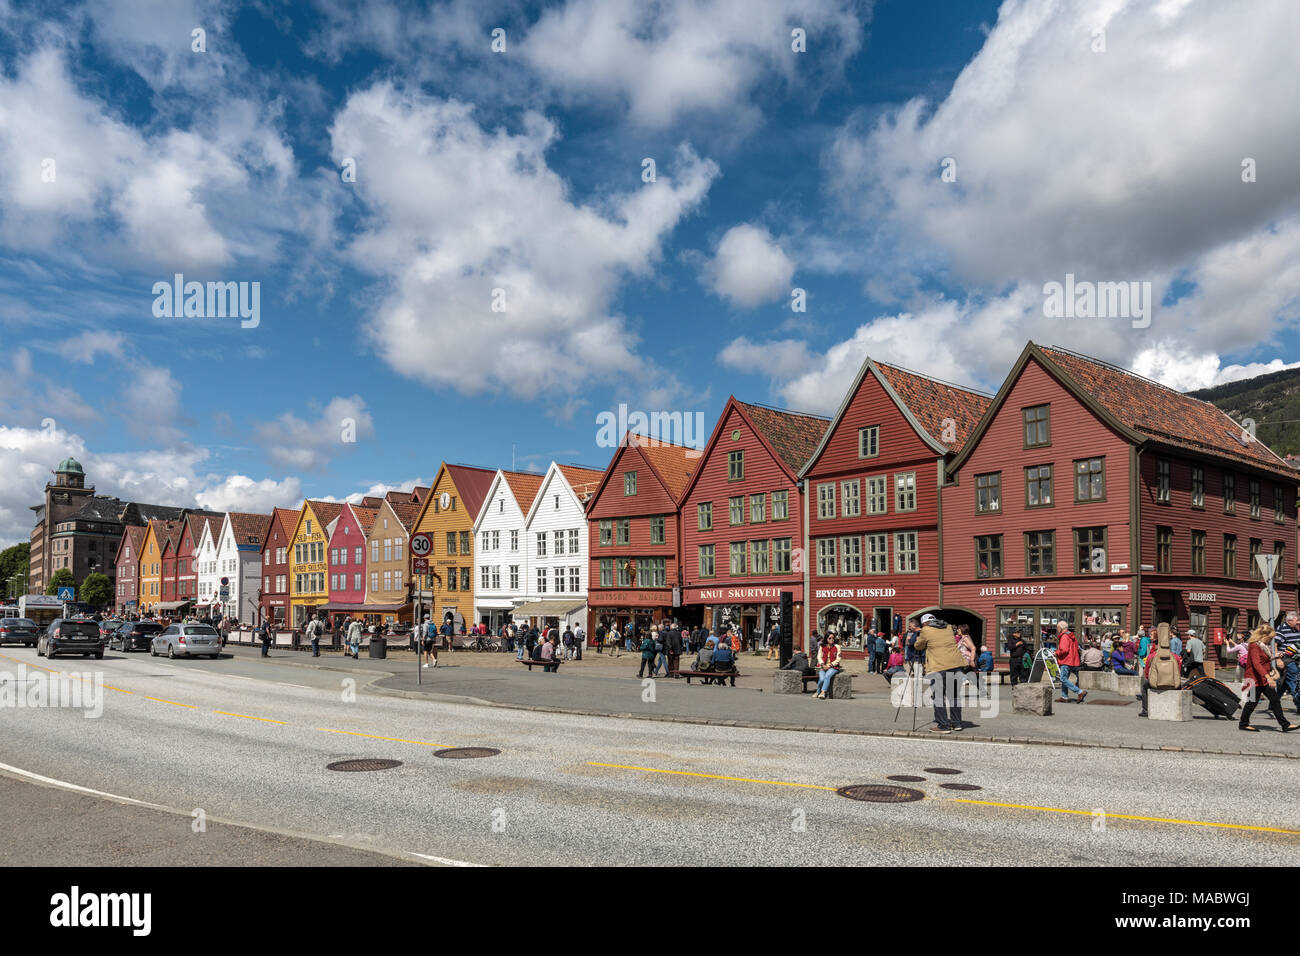 Von Bergen alte Werft Stadtteil Bryggen, Holz- lager Fassaden der Hanseatic Stilen und Farben, Norwegen Stockfoto